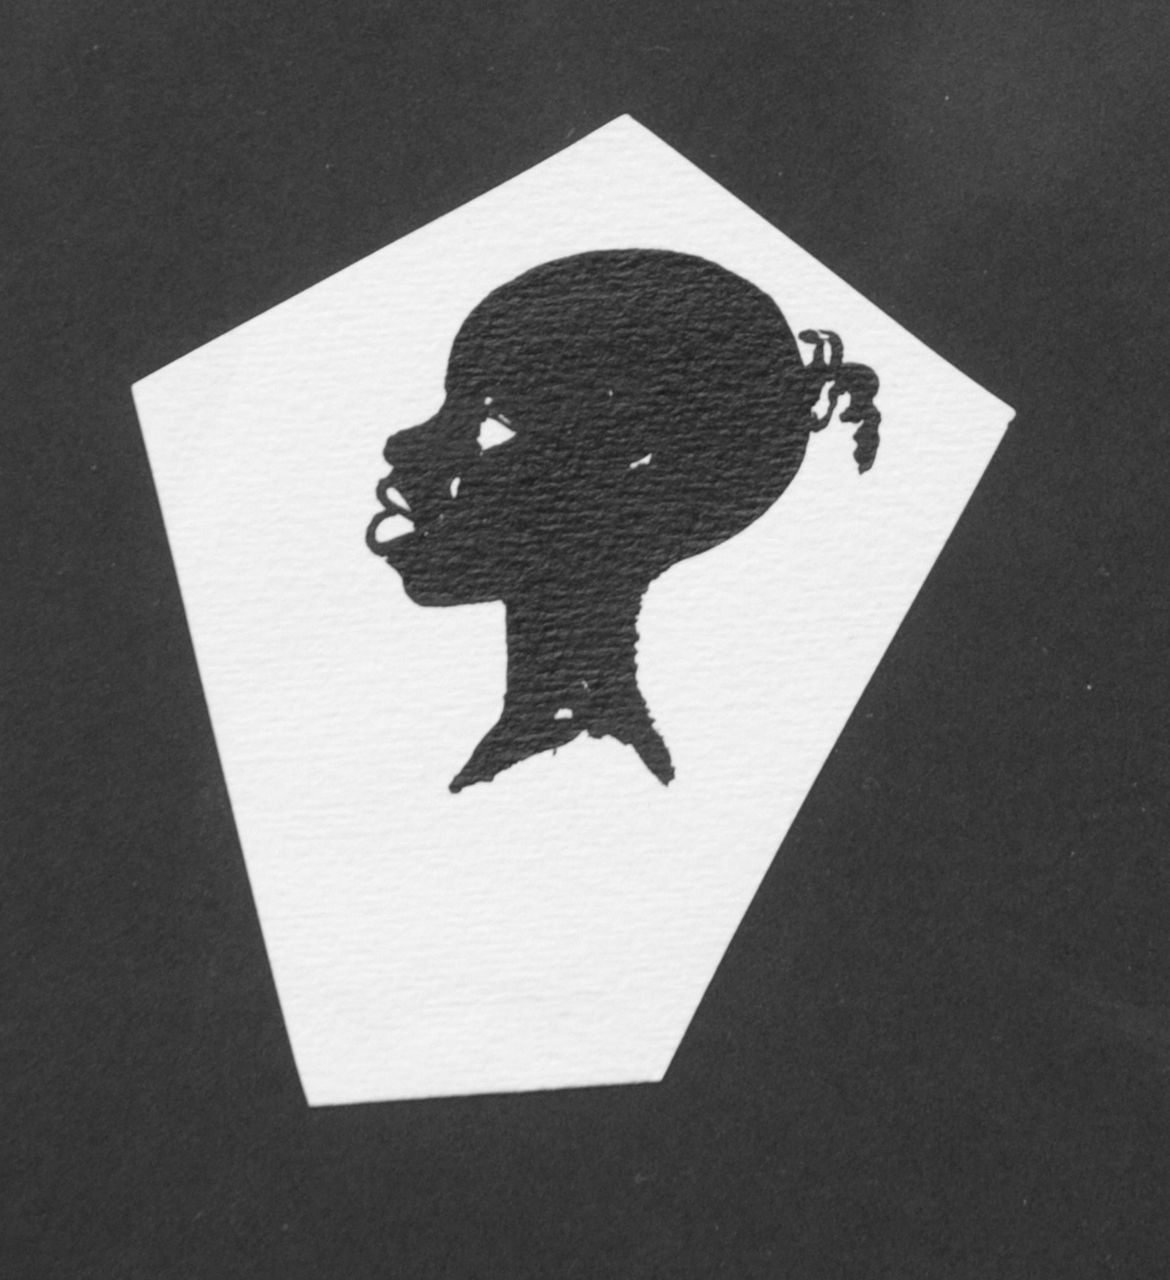 Oranje-Nassau (Prinses Beatrix) B.W.A. van | Beatrix Wilhelmina Armgard van Oranje-Nassau (Prinses Beatrix), En profil head, Bleistift und Ausziehtusche auf Papier 9,0 x 8,1 cm, executed August 1960